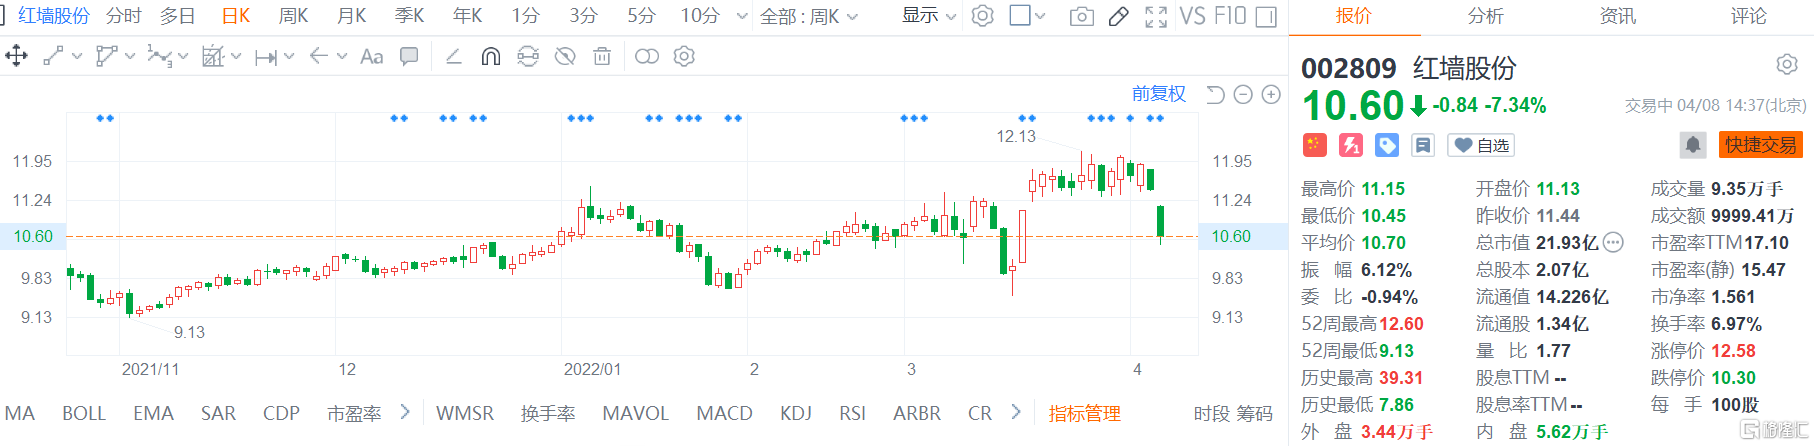 红墙股份(002809.SZ)股价低位震荡 现报10.6元跌幅7.34%